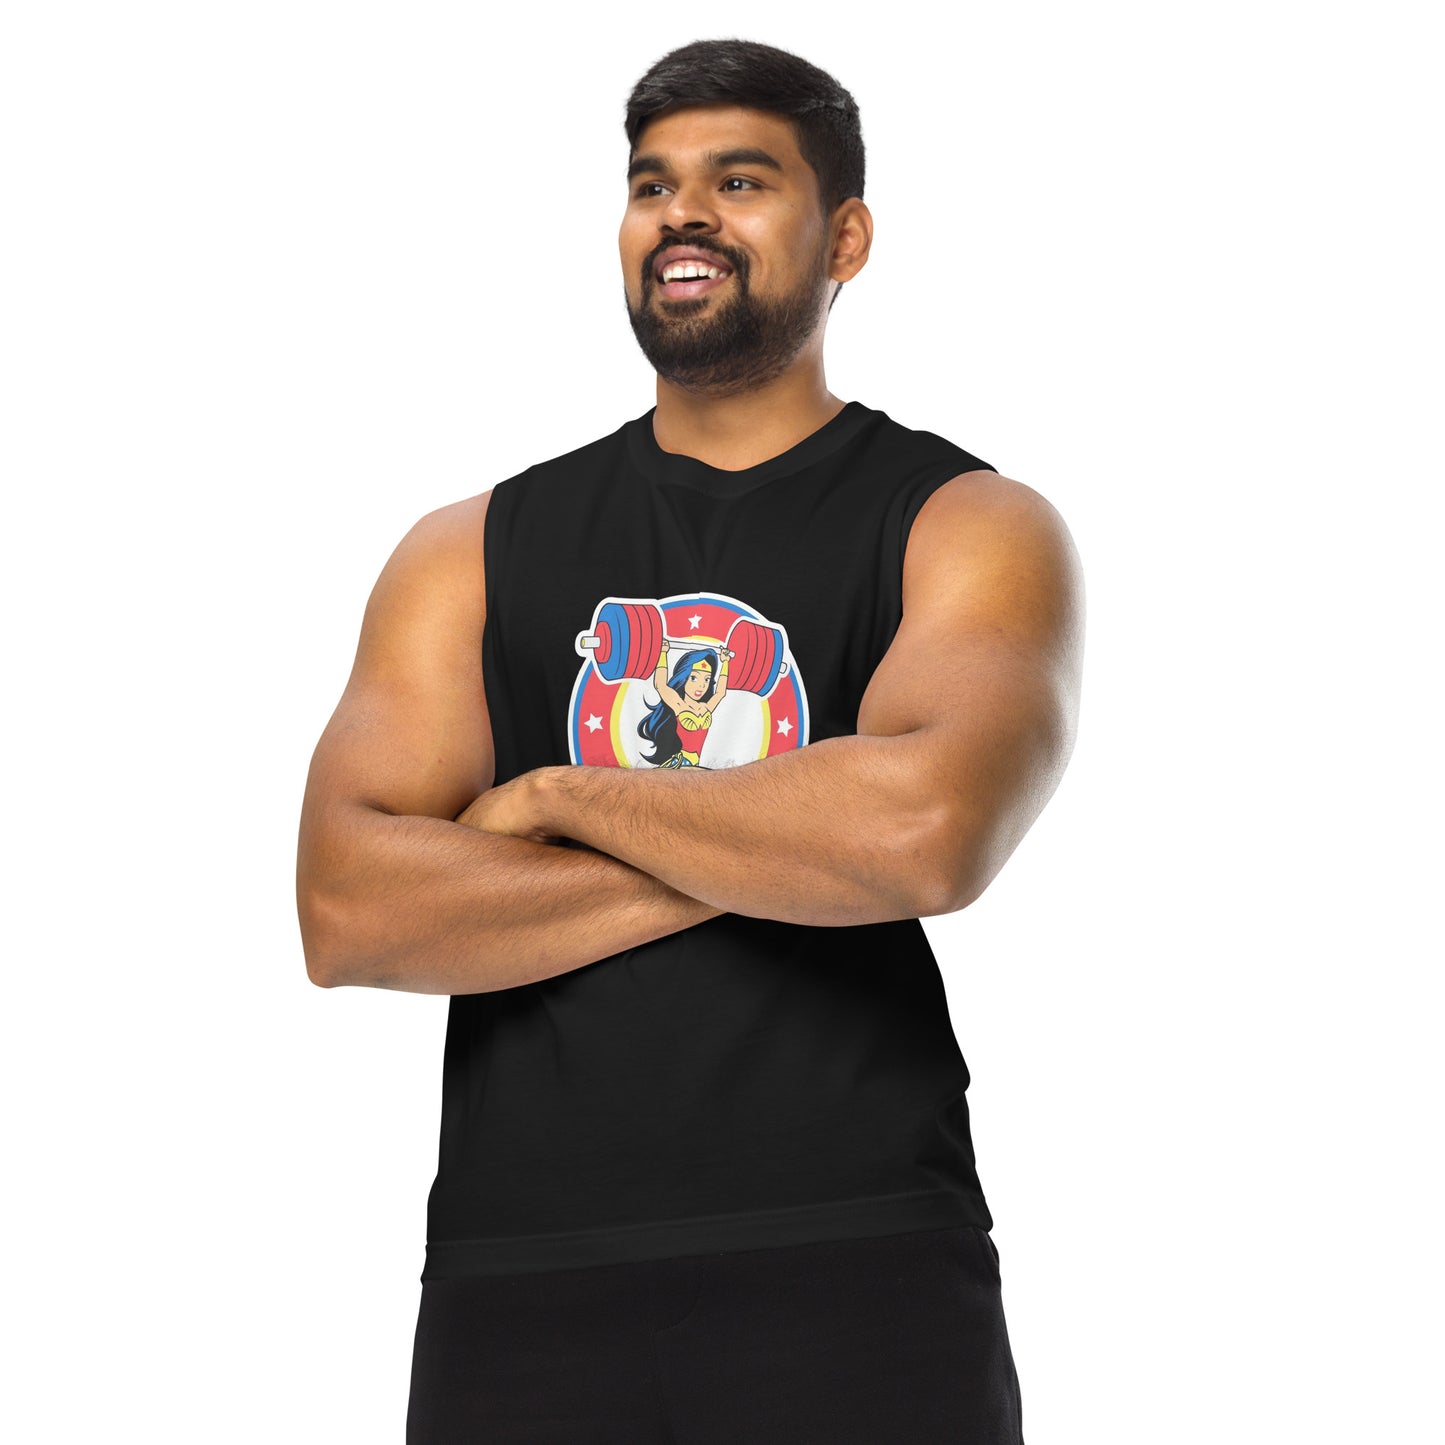 Camiseta sin mangas perfecta para entrenar, Camiseta Wonder Weightlifting comprala en línea y experimenta el mejor servicio al cliente. 